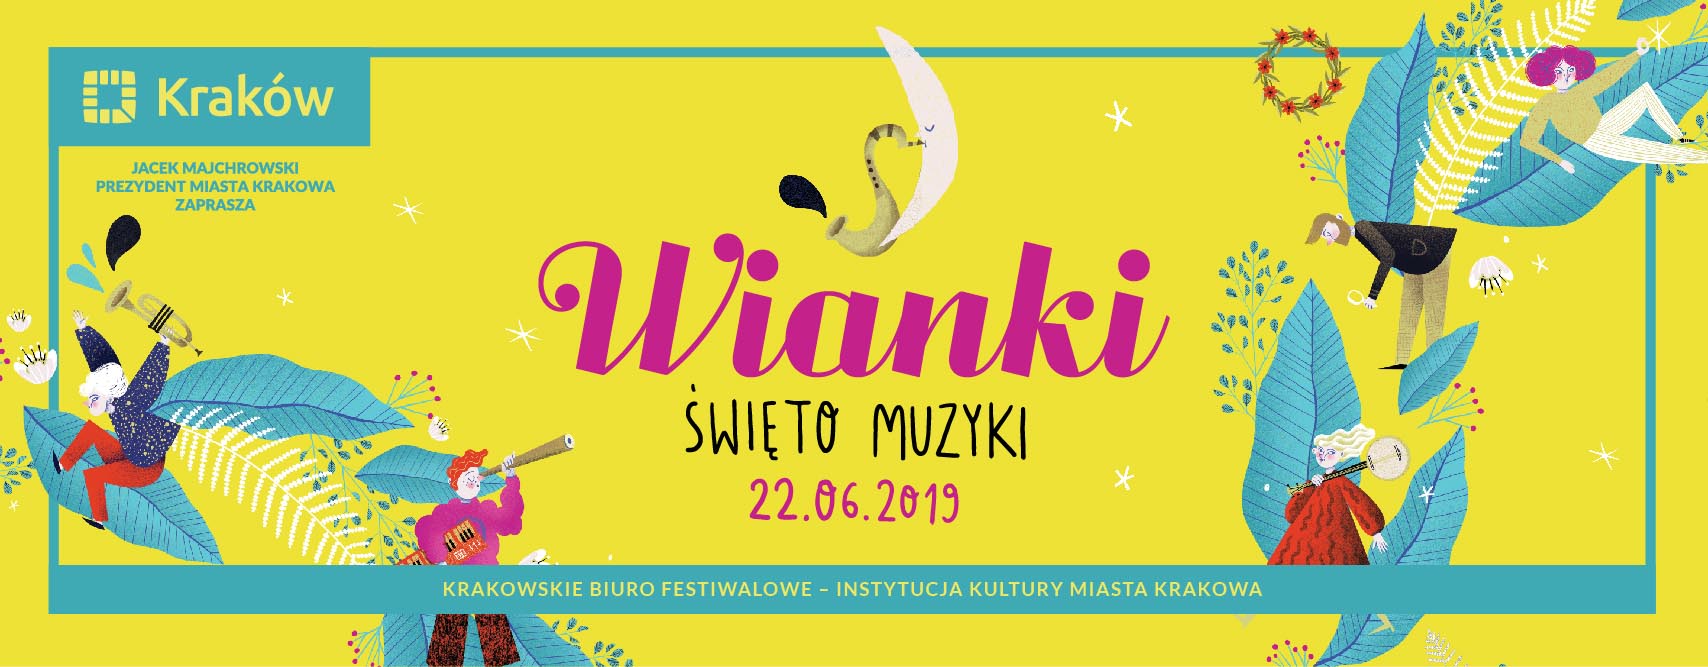 Wianki w Krakowie 2019